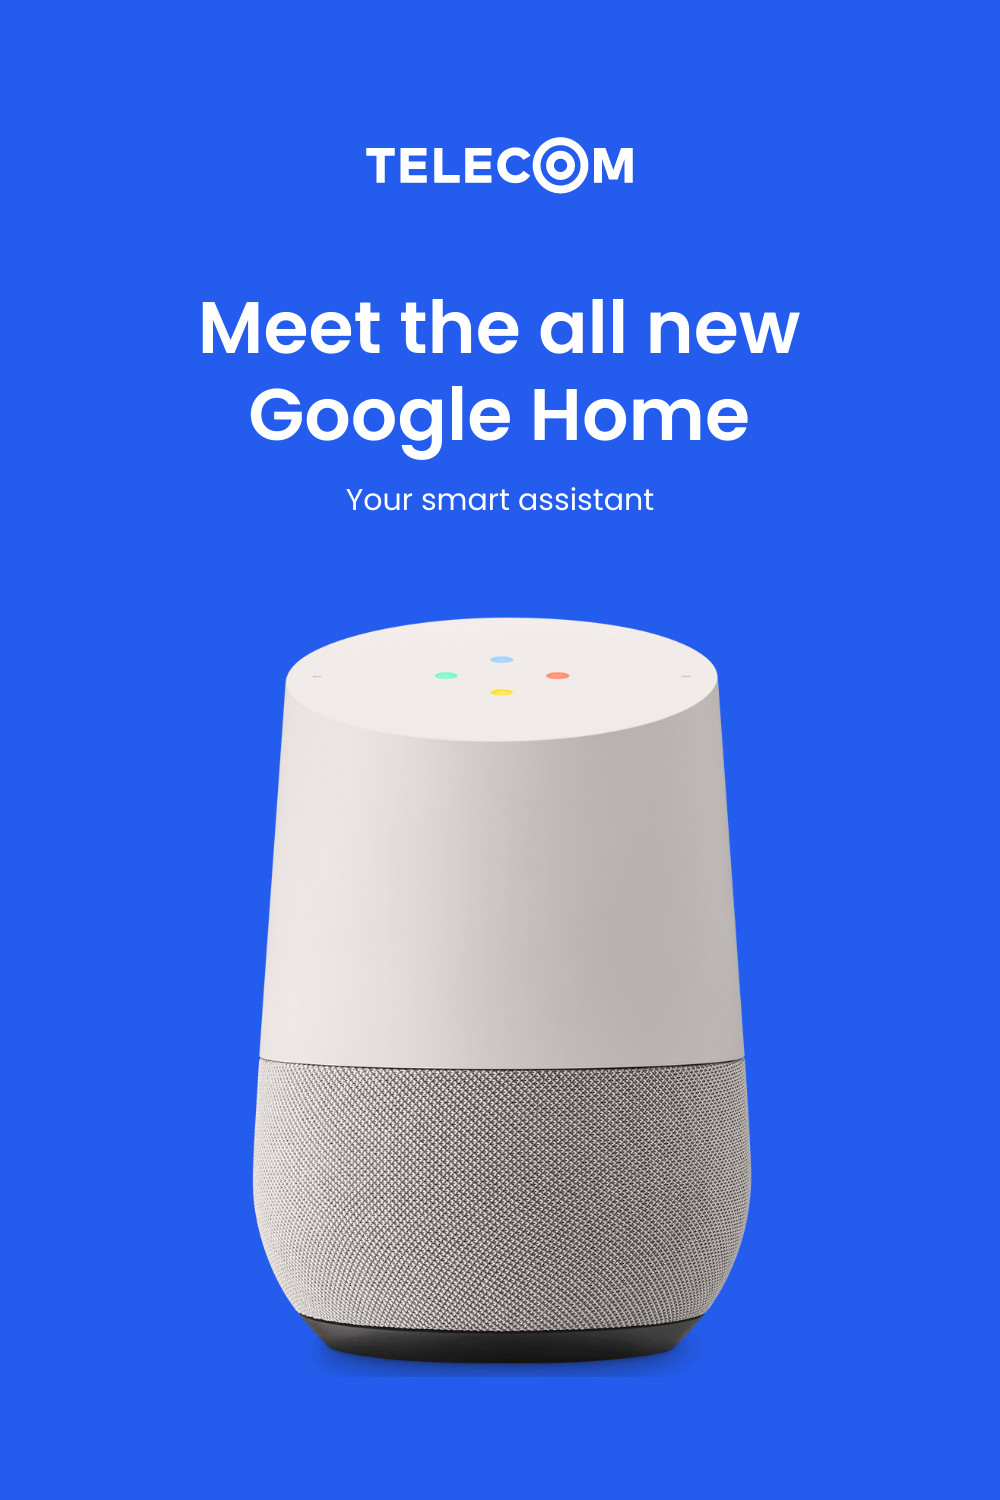 Meet the New Google Home